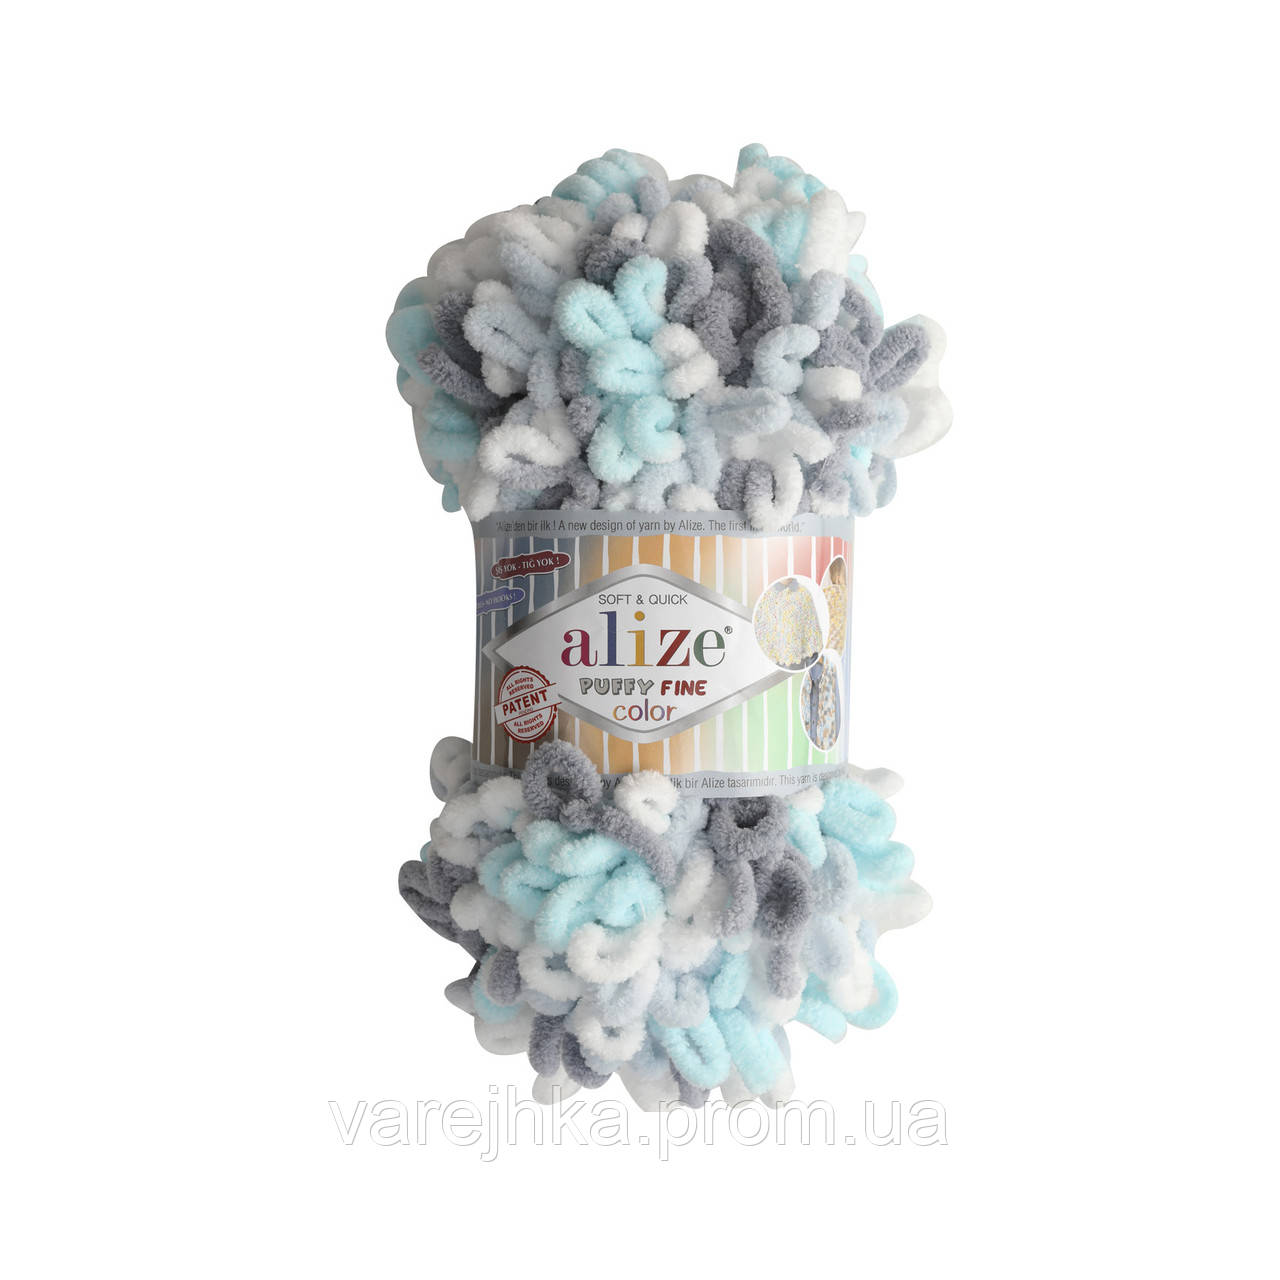 Пряжа з петельками Alize Puffy Fine Color 5939 (Пуффі Файн Колор Алізе) для в'язання без спиць руками